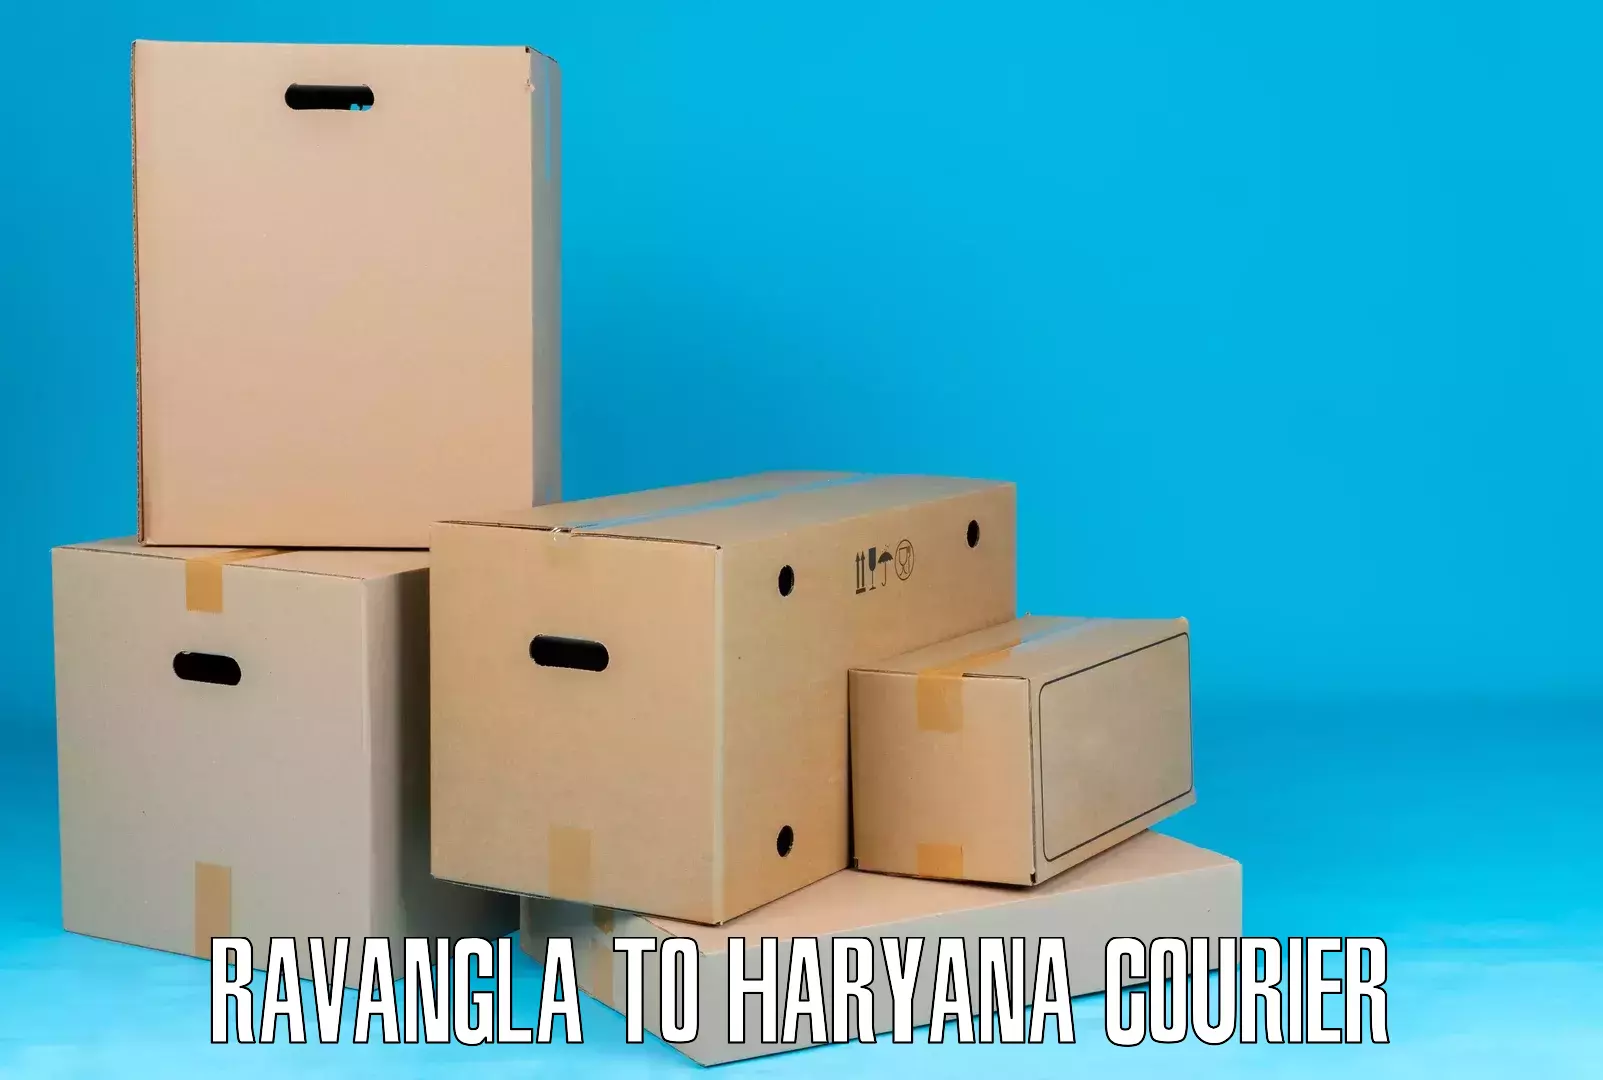 Global delivery options Ravangla to NCR Haryana